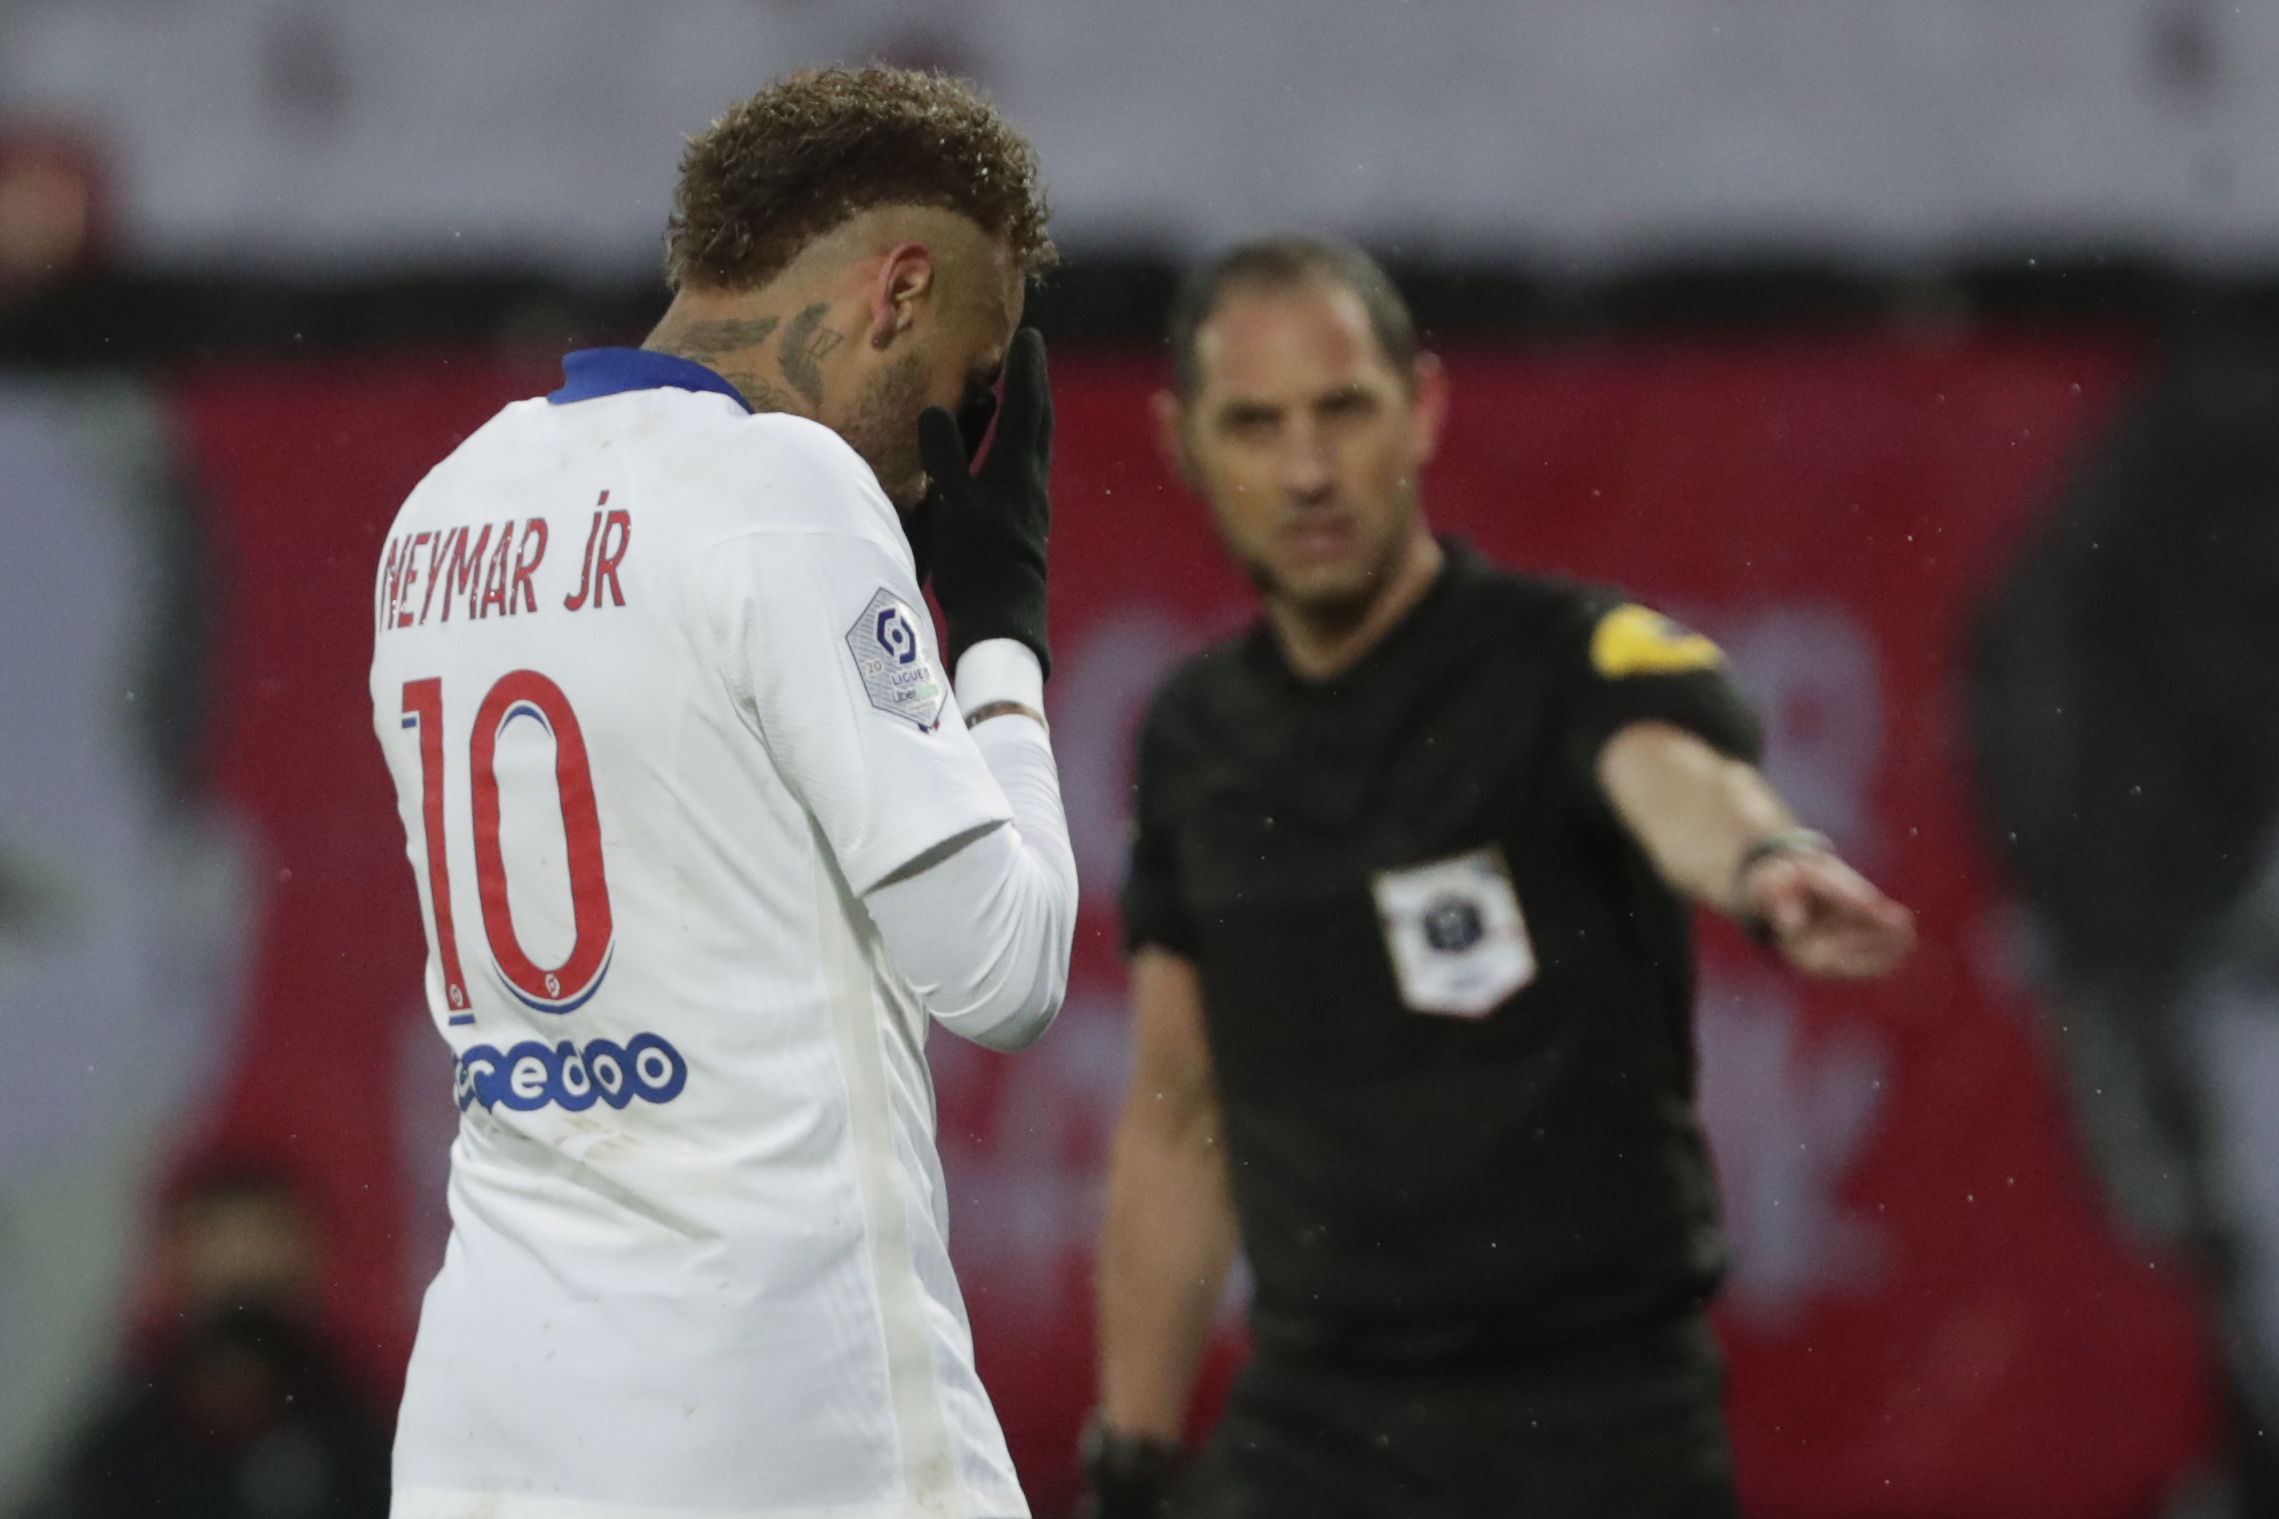 Rottura tra Nike e Neymar dopo accuse abusi sessuali. Il brasiliano nega e parla di motivi commerciali